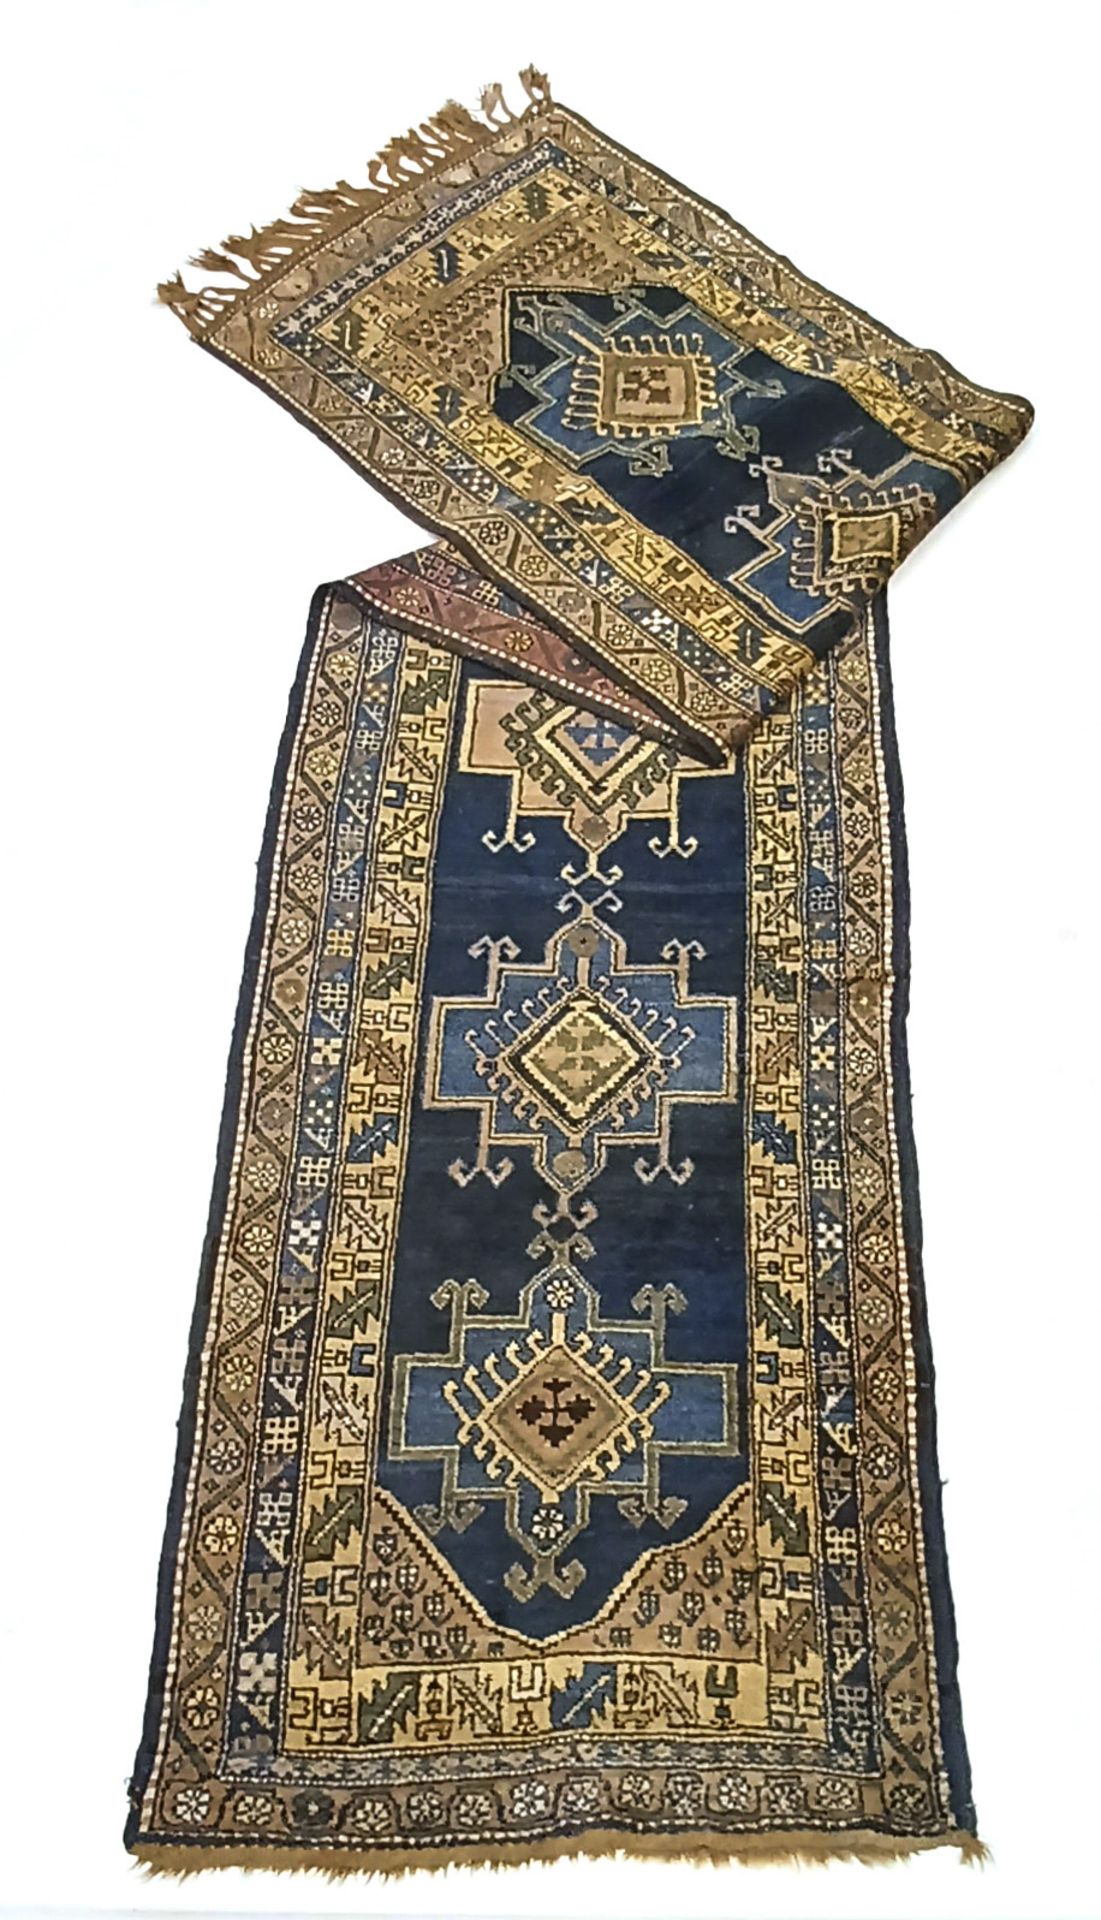 Carpet, Rug, runner, full pile, slightly worn, worn fringes, 480 x 114 cm